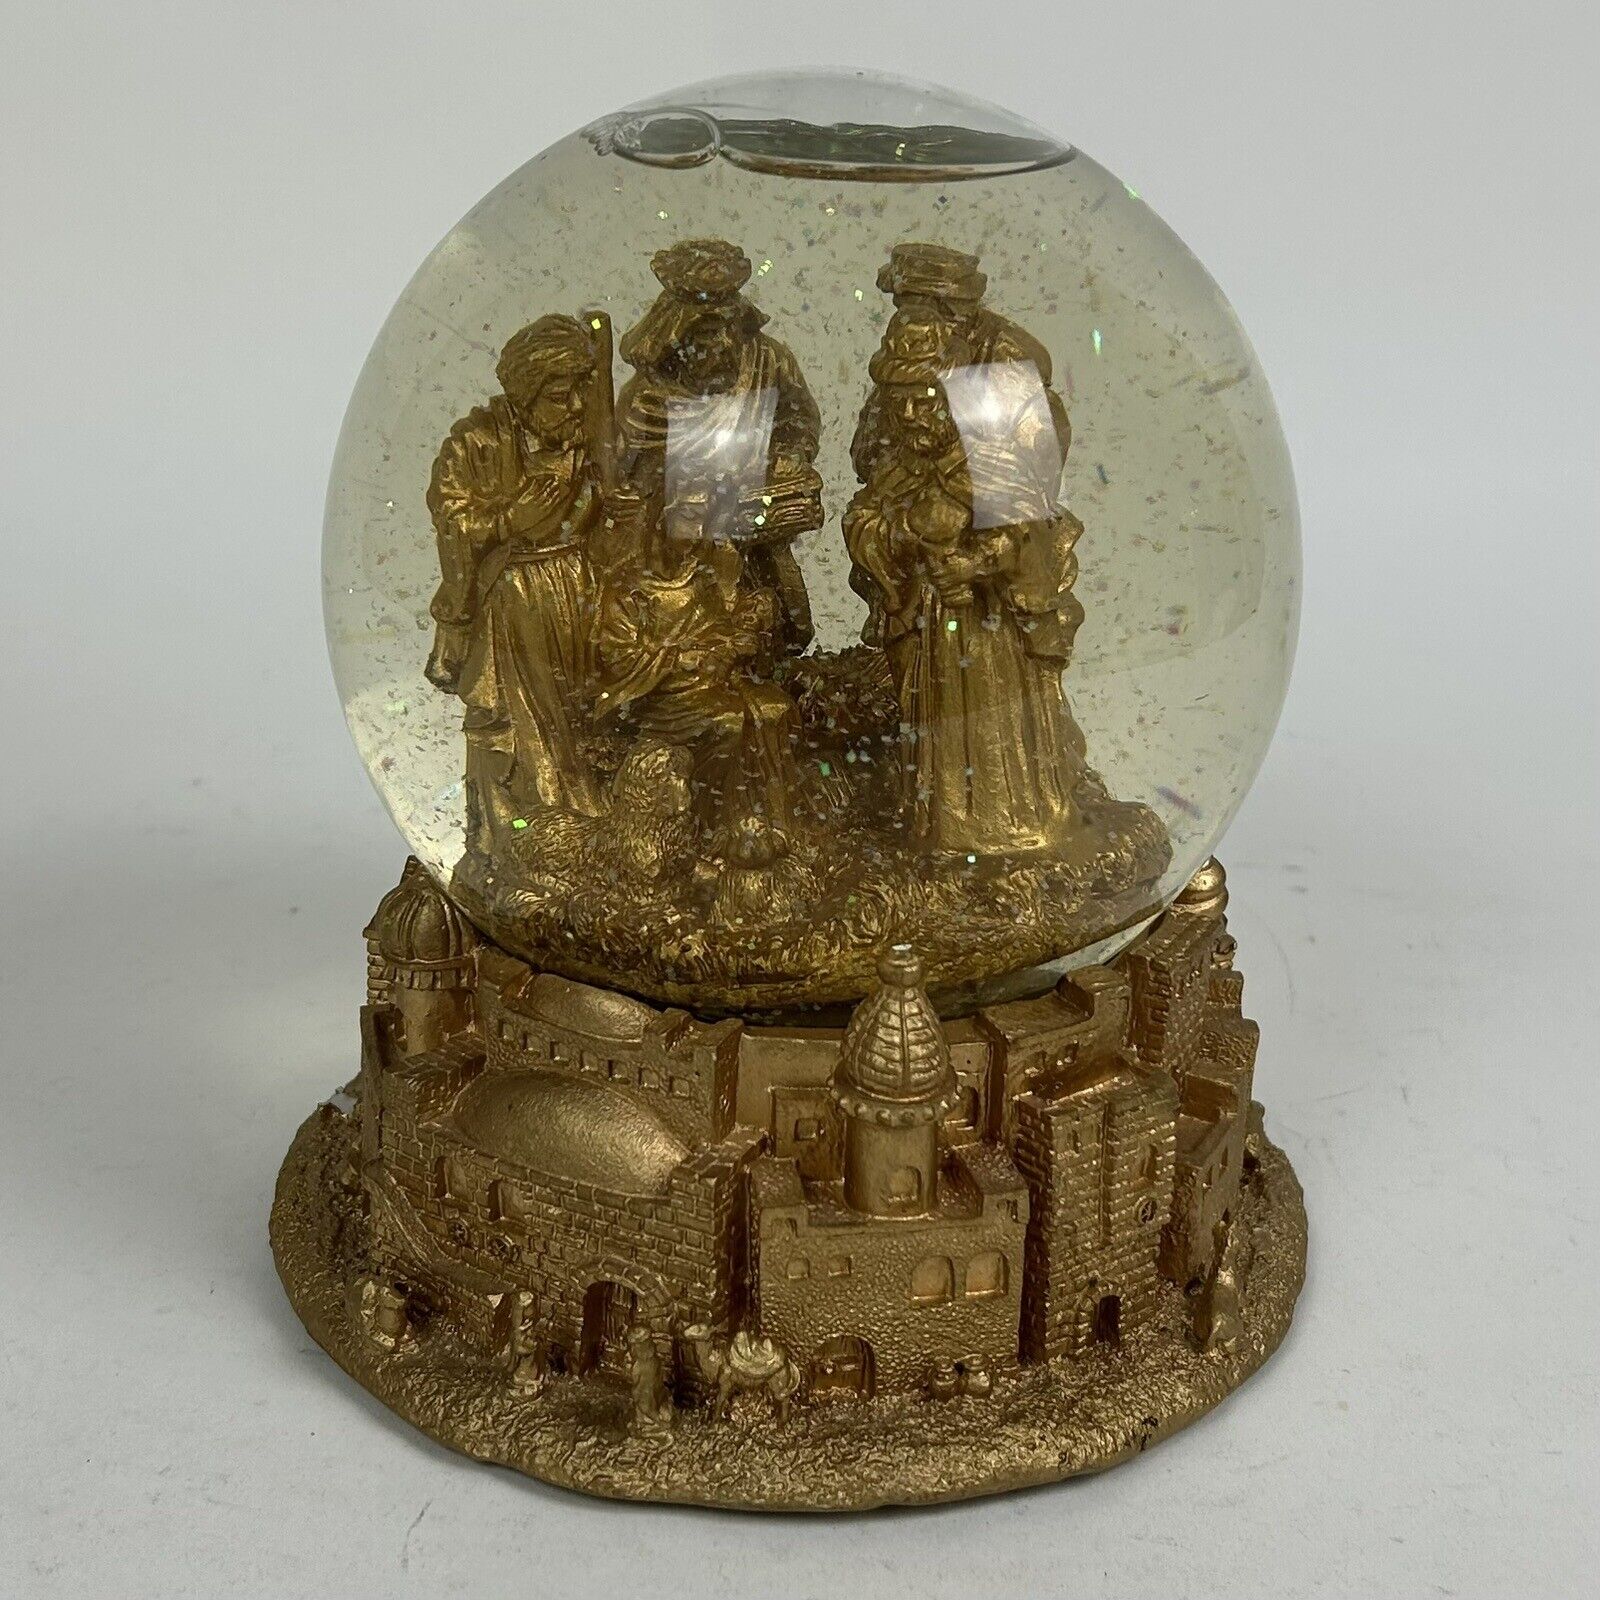 The San Francisco Music Box Company - Gold Nativity Scene Snow Globe - Has Issue